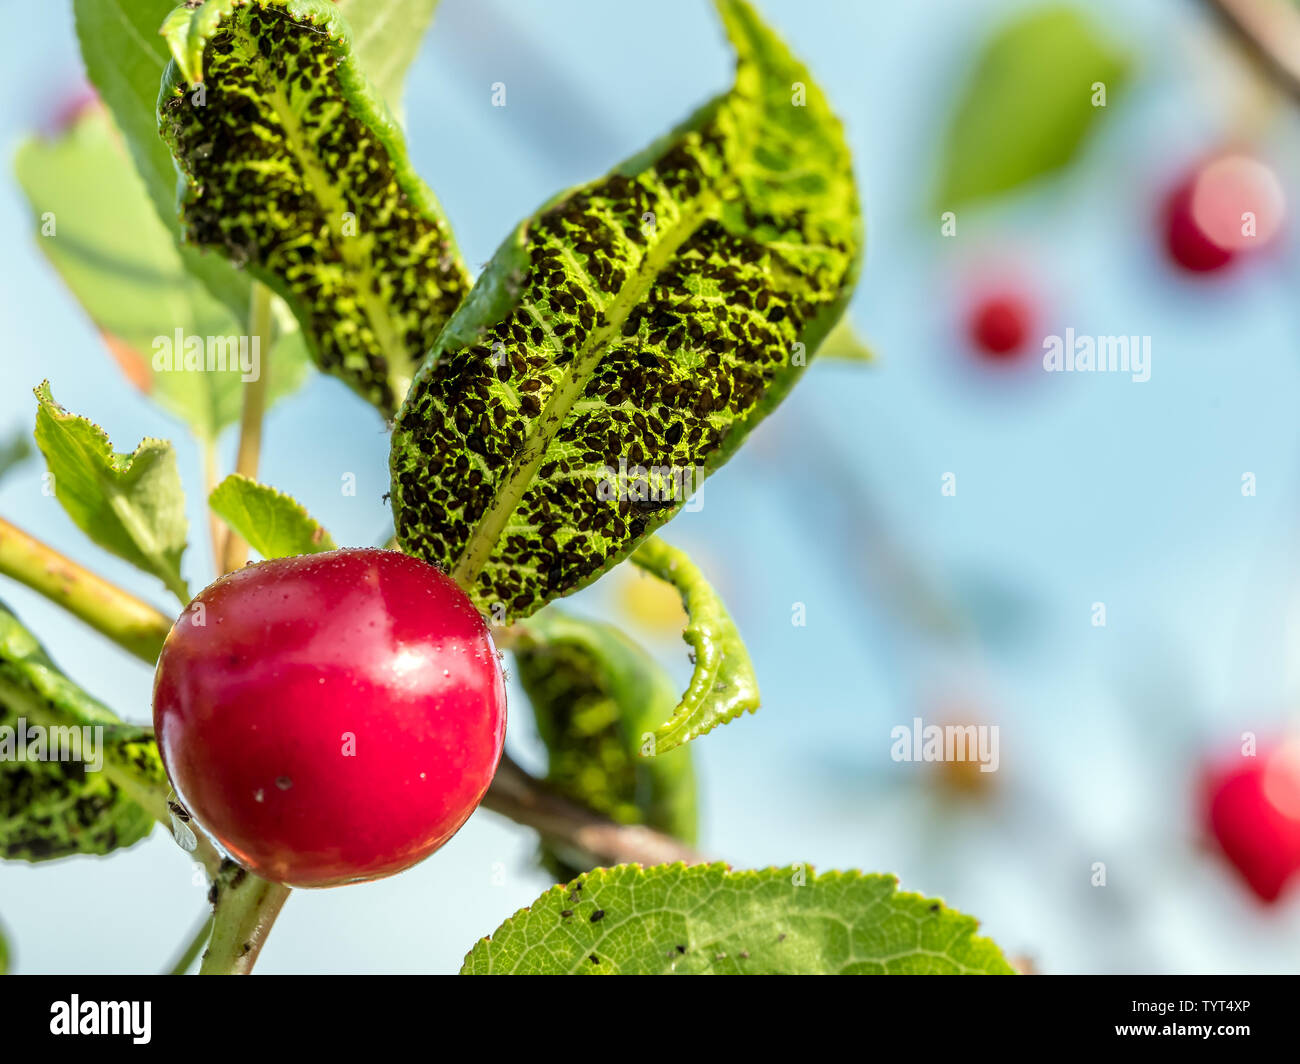 Colonie d'évacuation aphidoidea sur cherry tree leaves Banque D'Images